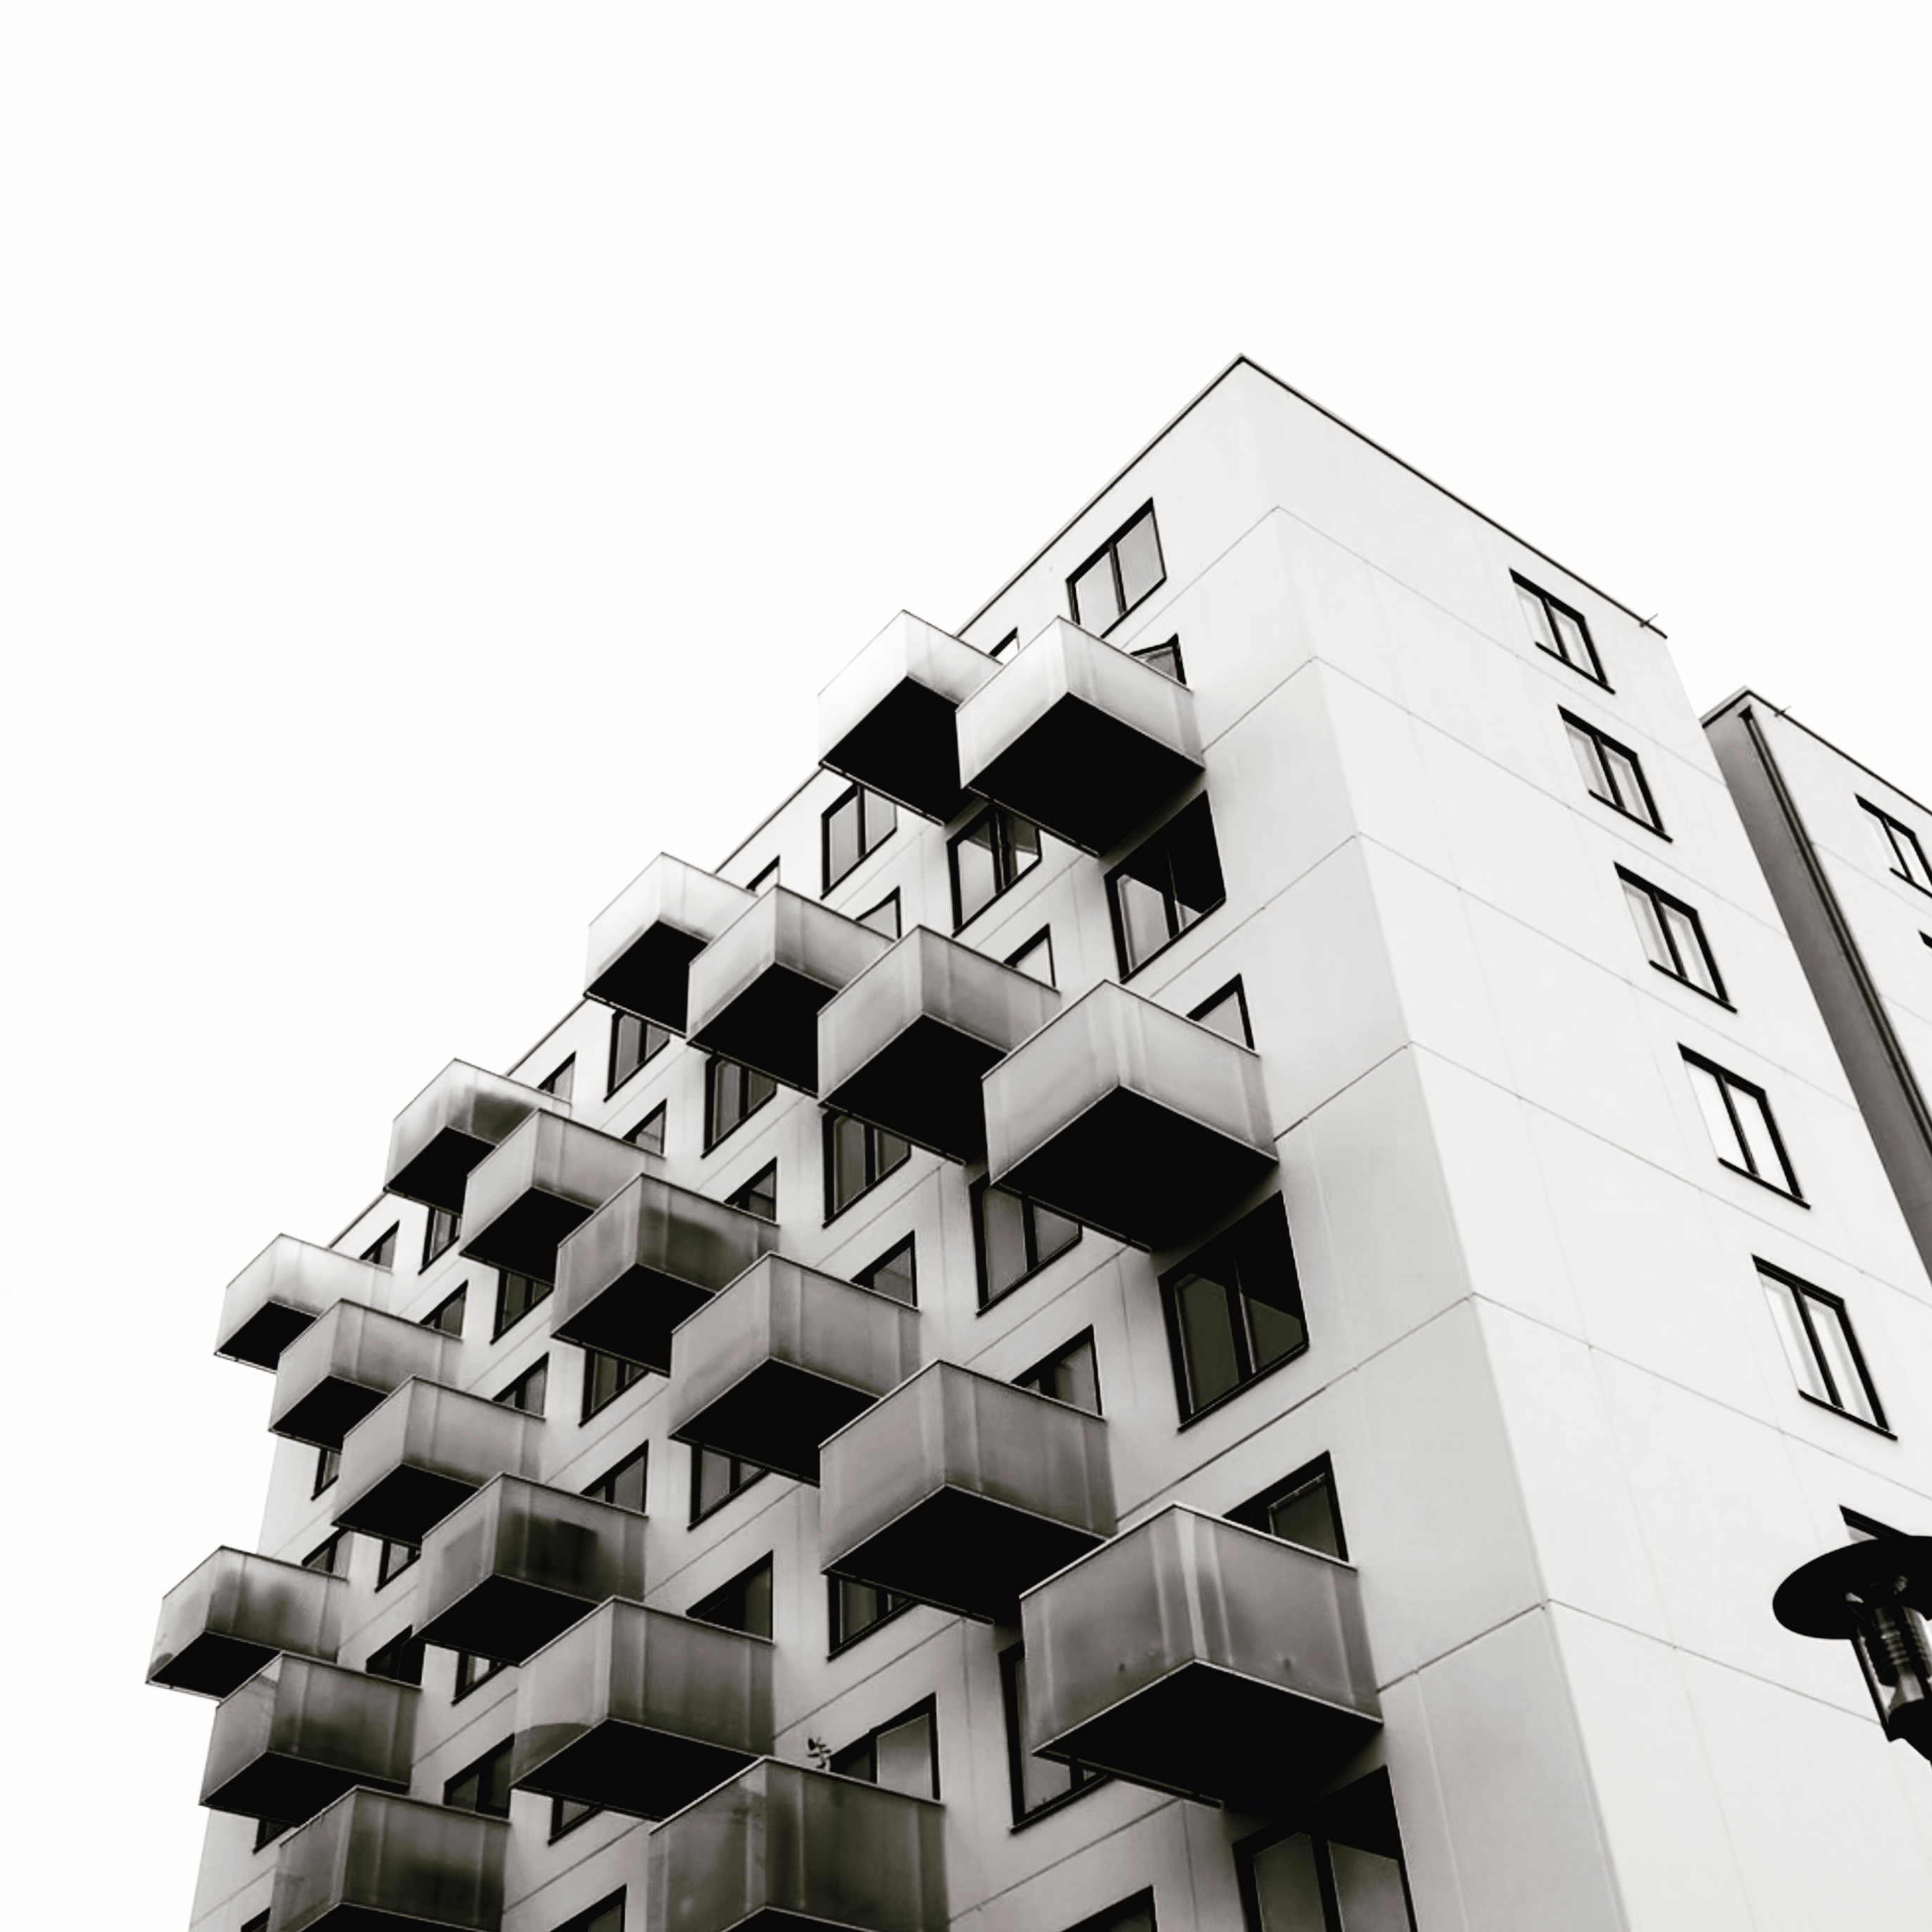 Фото квартира с обоями, здание, архитектура, монохромный, точка зрения, город - бесплатные картинки на Fonwall